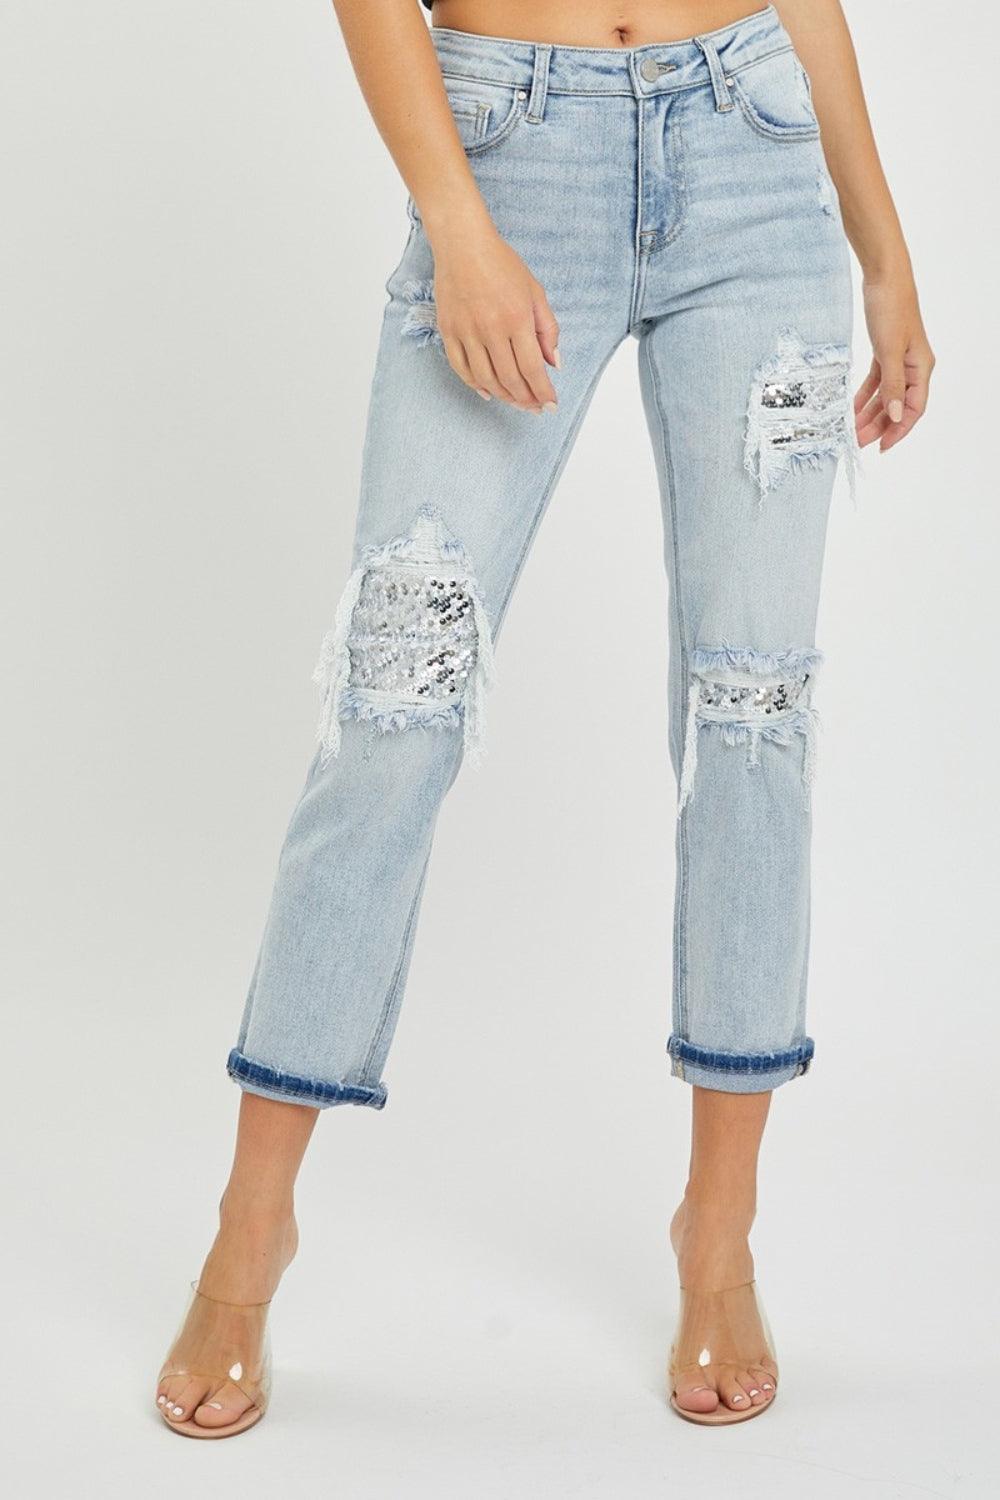 RISEN Mid-Rise Sequin Patched Jeans - Jessiz Boutique